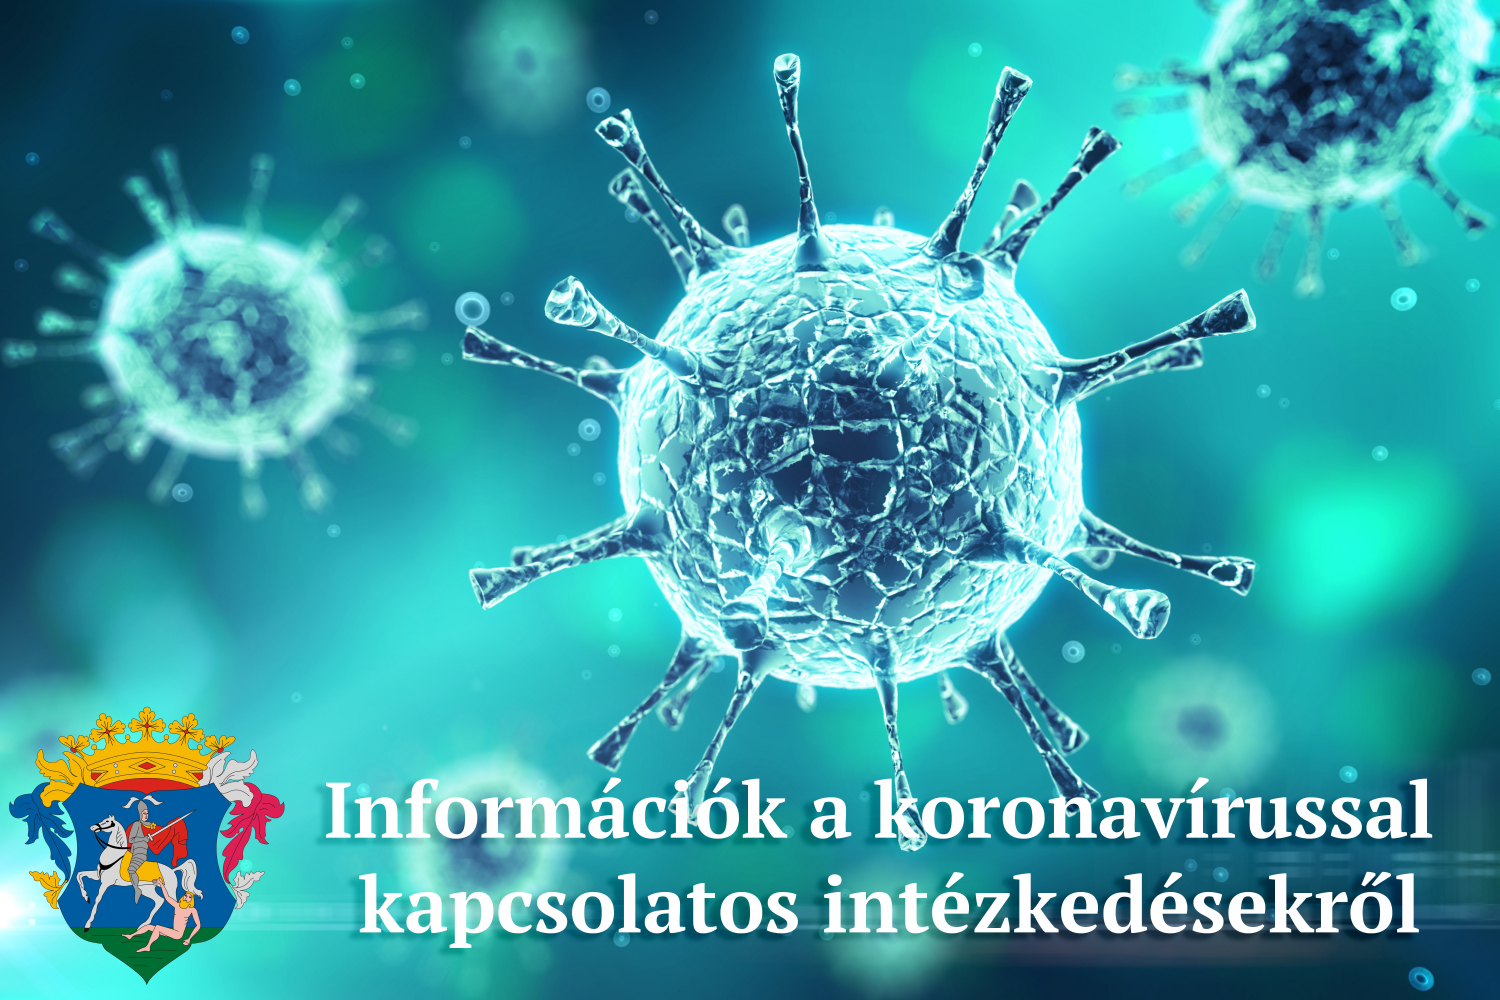 információk a koronavírussal kapcsolatos intézkedésekről, döntésekről 2020. december 14-22 között